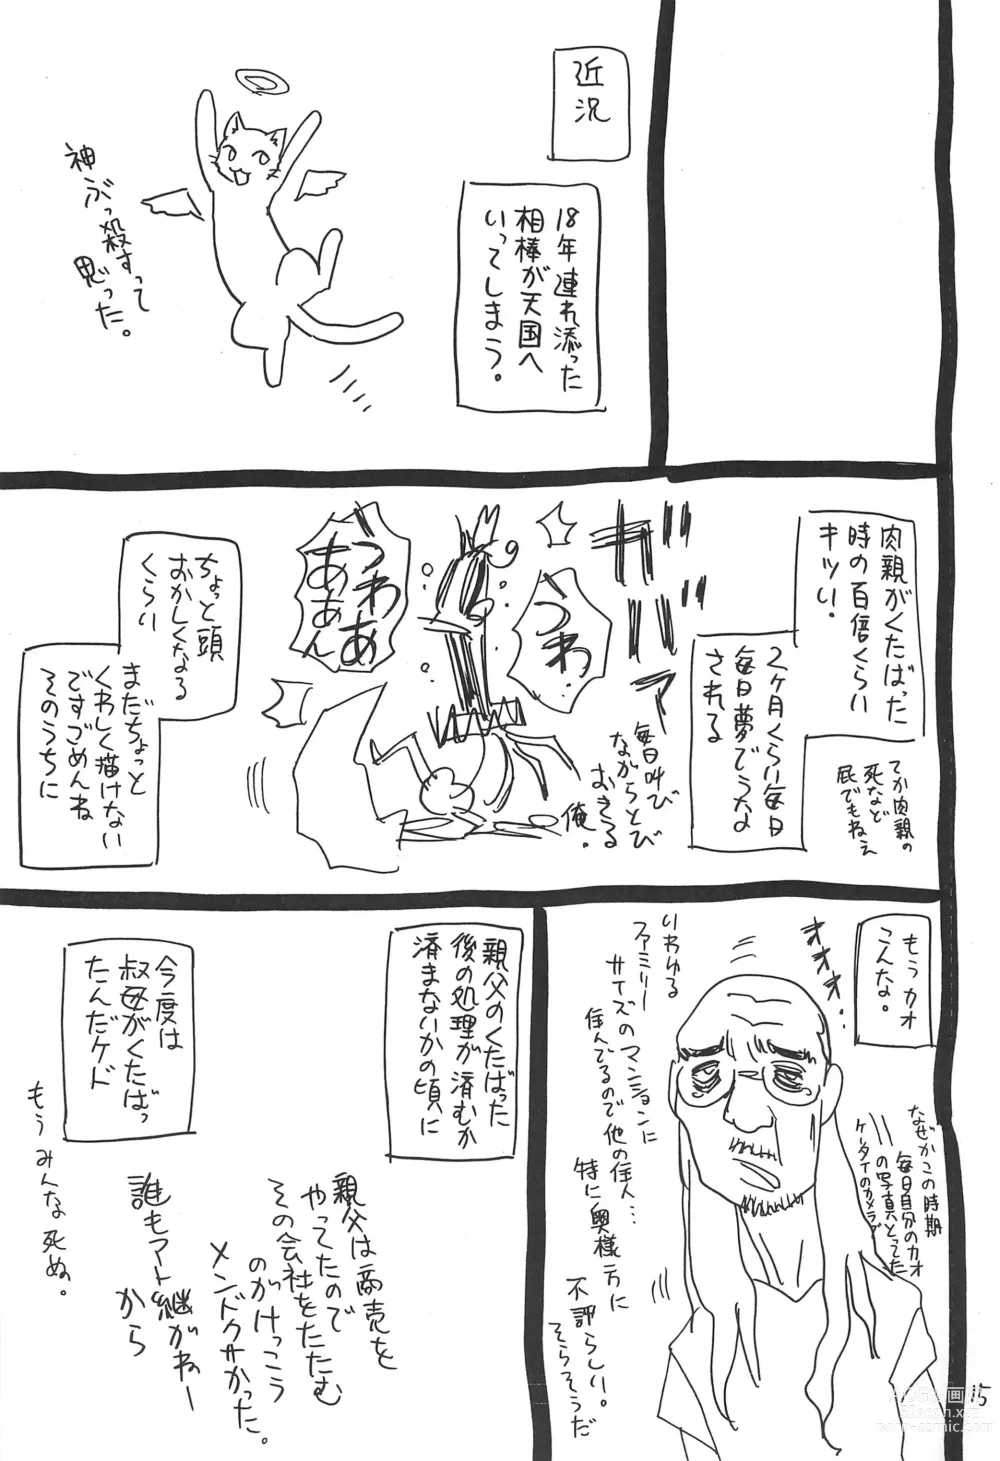 Page 15 of doujinshi Hyakka Shokkou Atopink